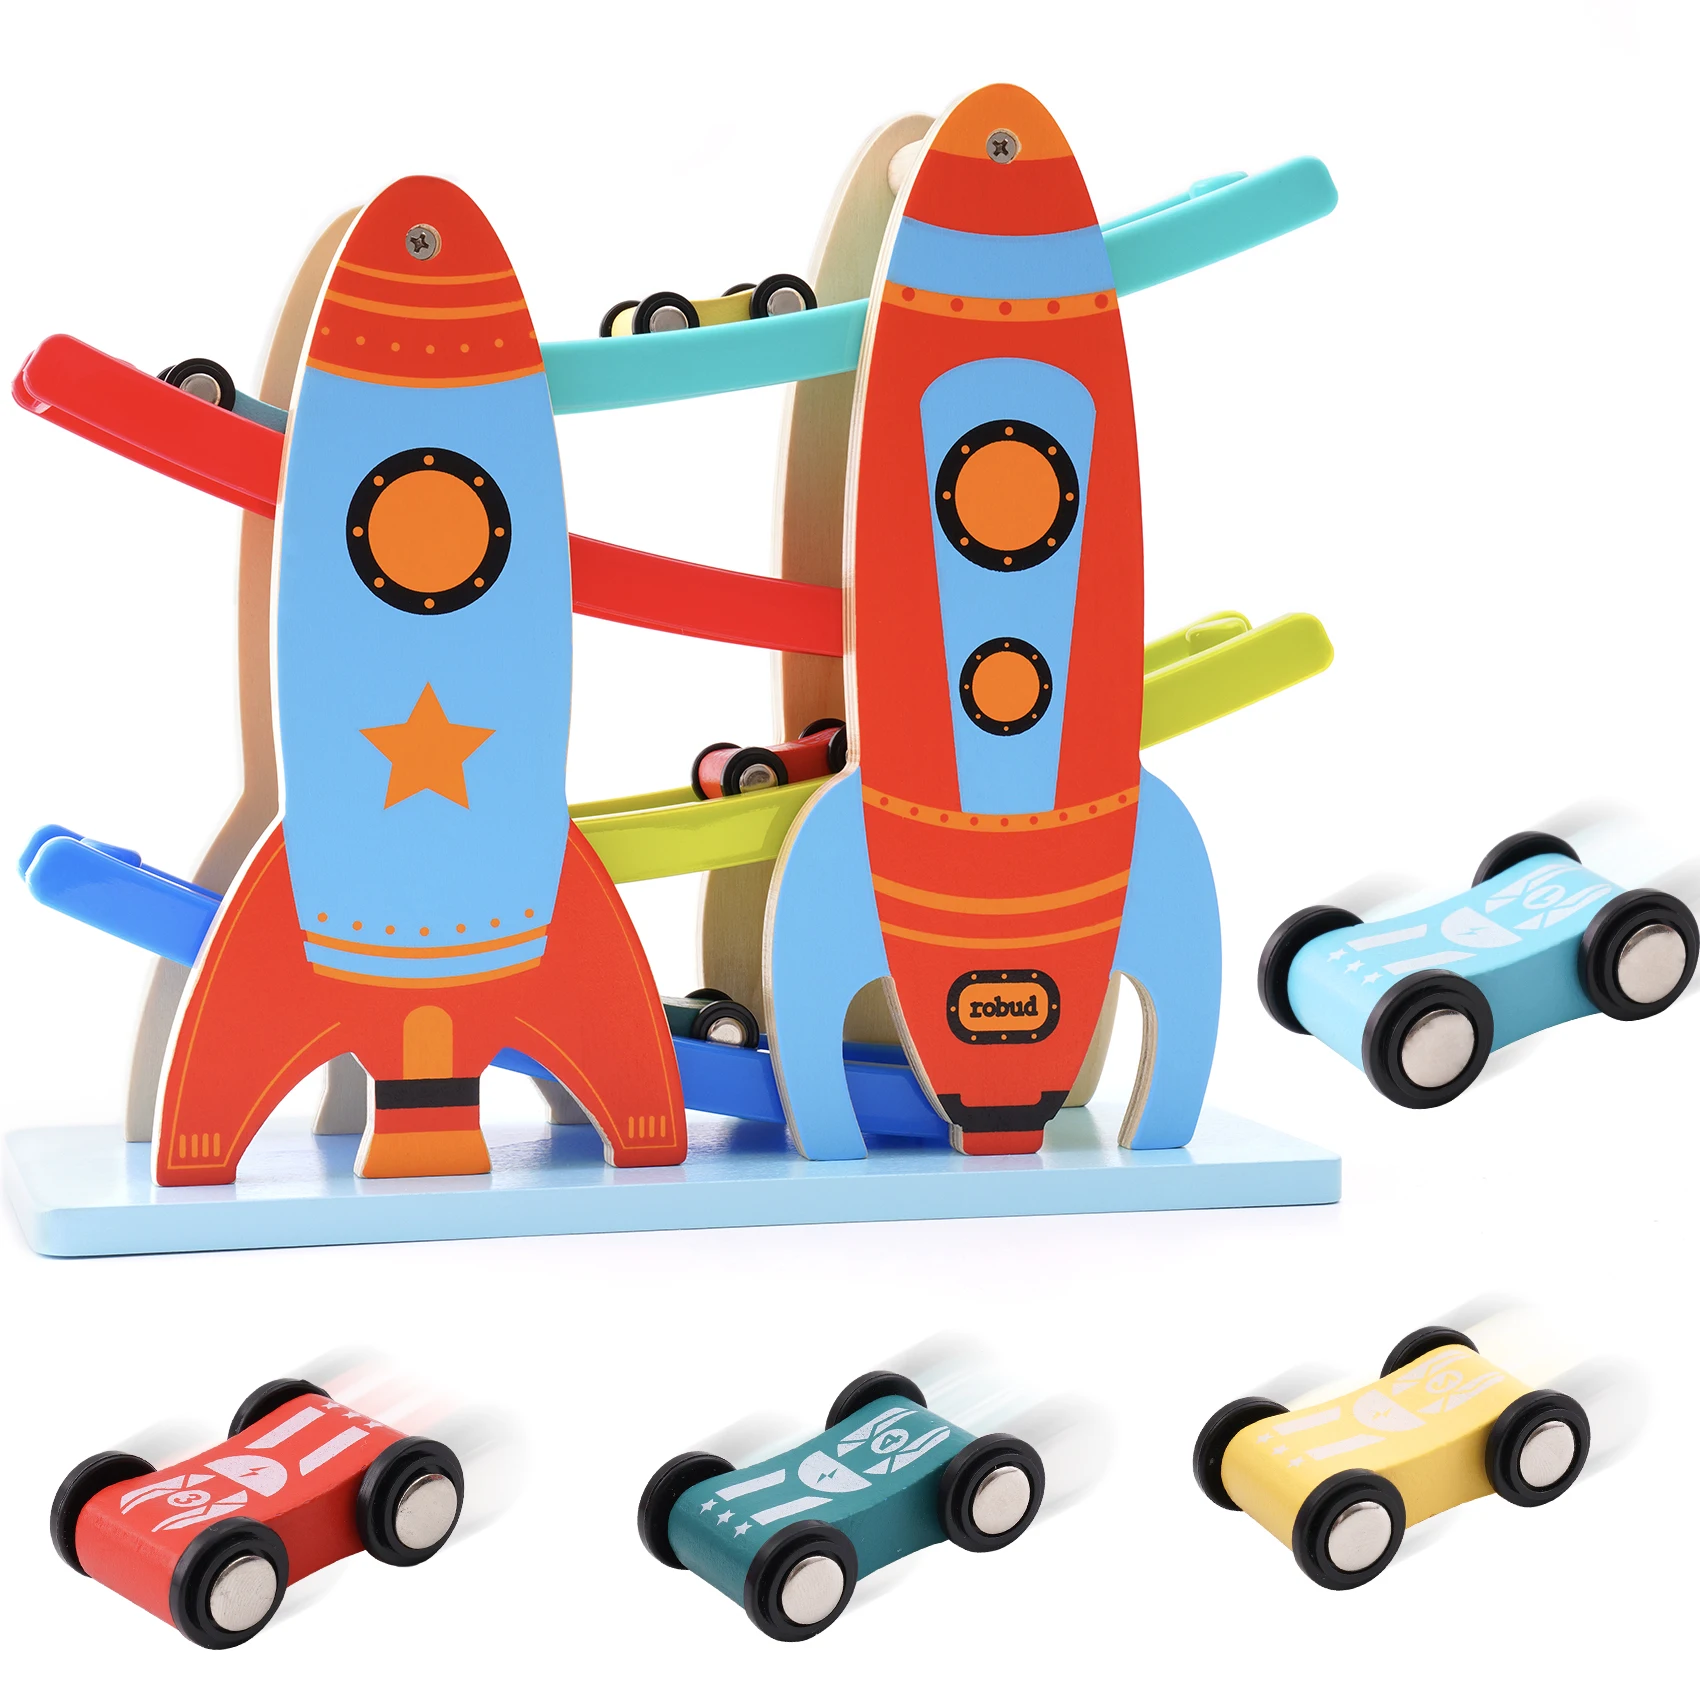 

Игрушечный автомобиль, рампа, гоночный трек для малышей, игрушка с 4 автомобилями, гоночная рампа, игрушечные детские игрушечные автомобили,...